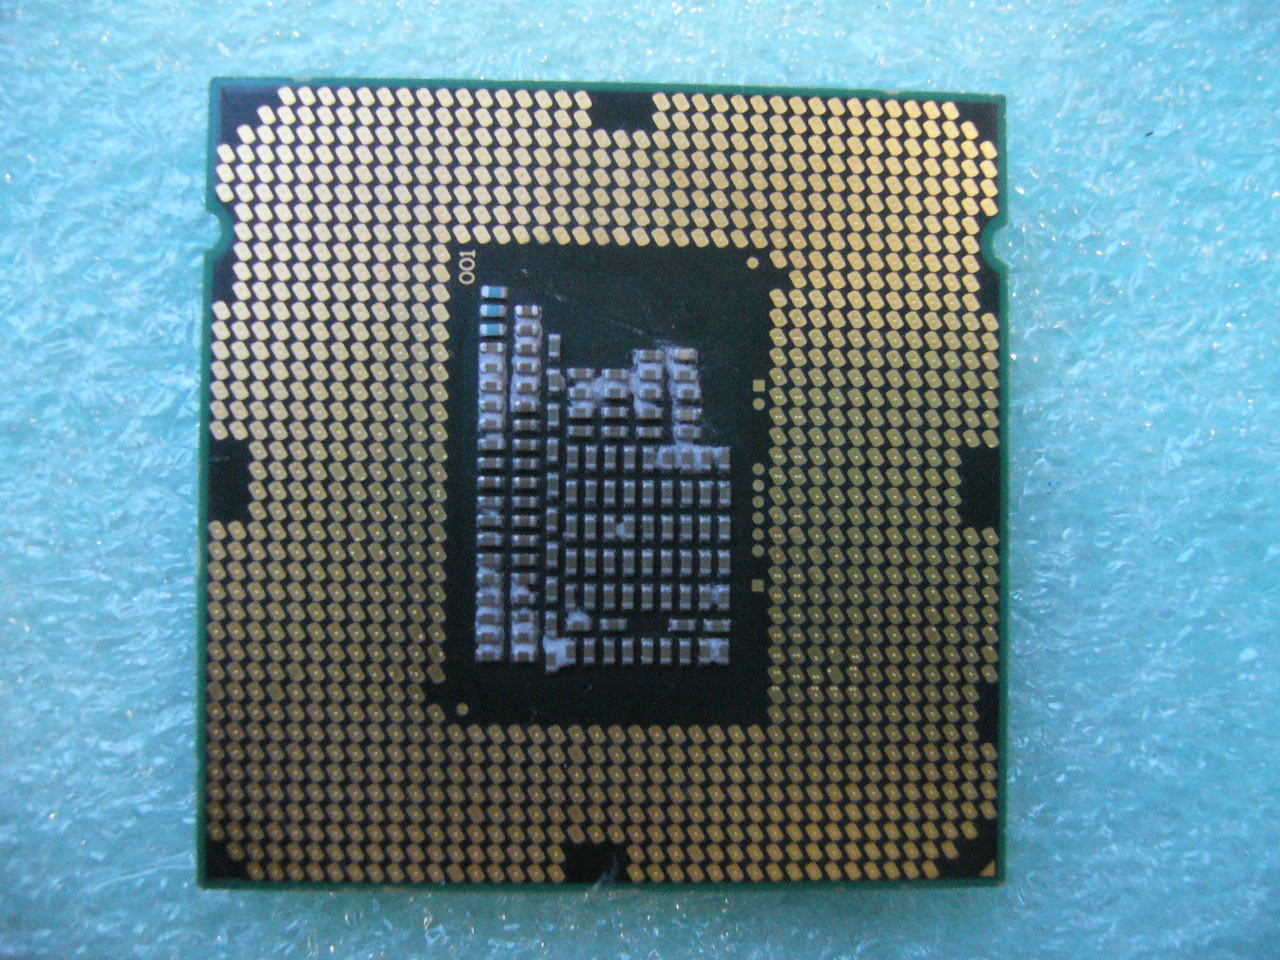 QTY 1x INTEL Celeron CPU G530 2.4GHZ/2MB LGA1155 SR05H - Click Image to Close